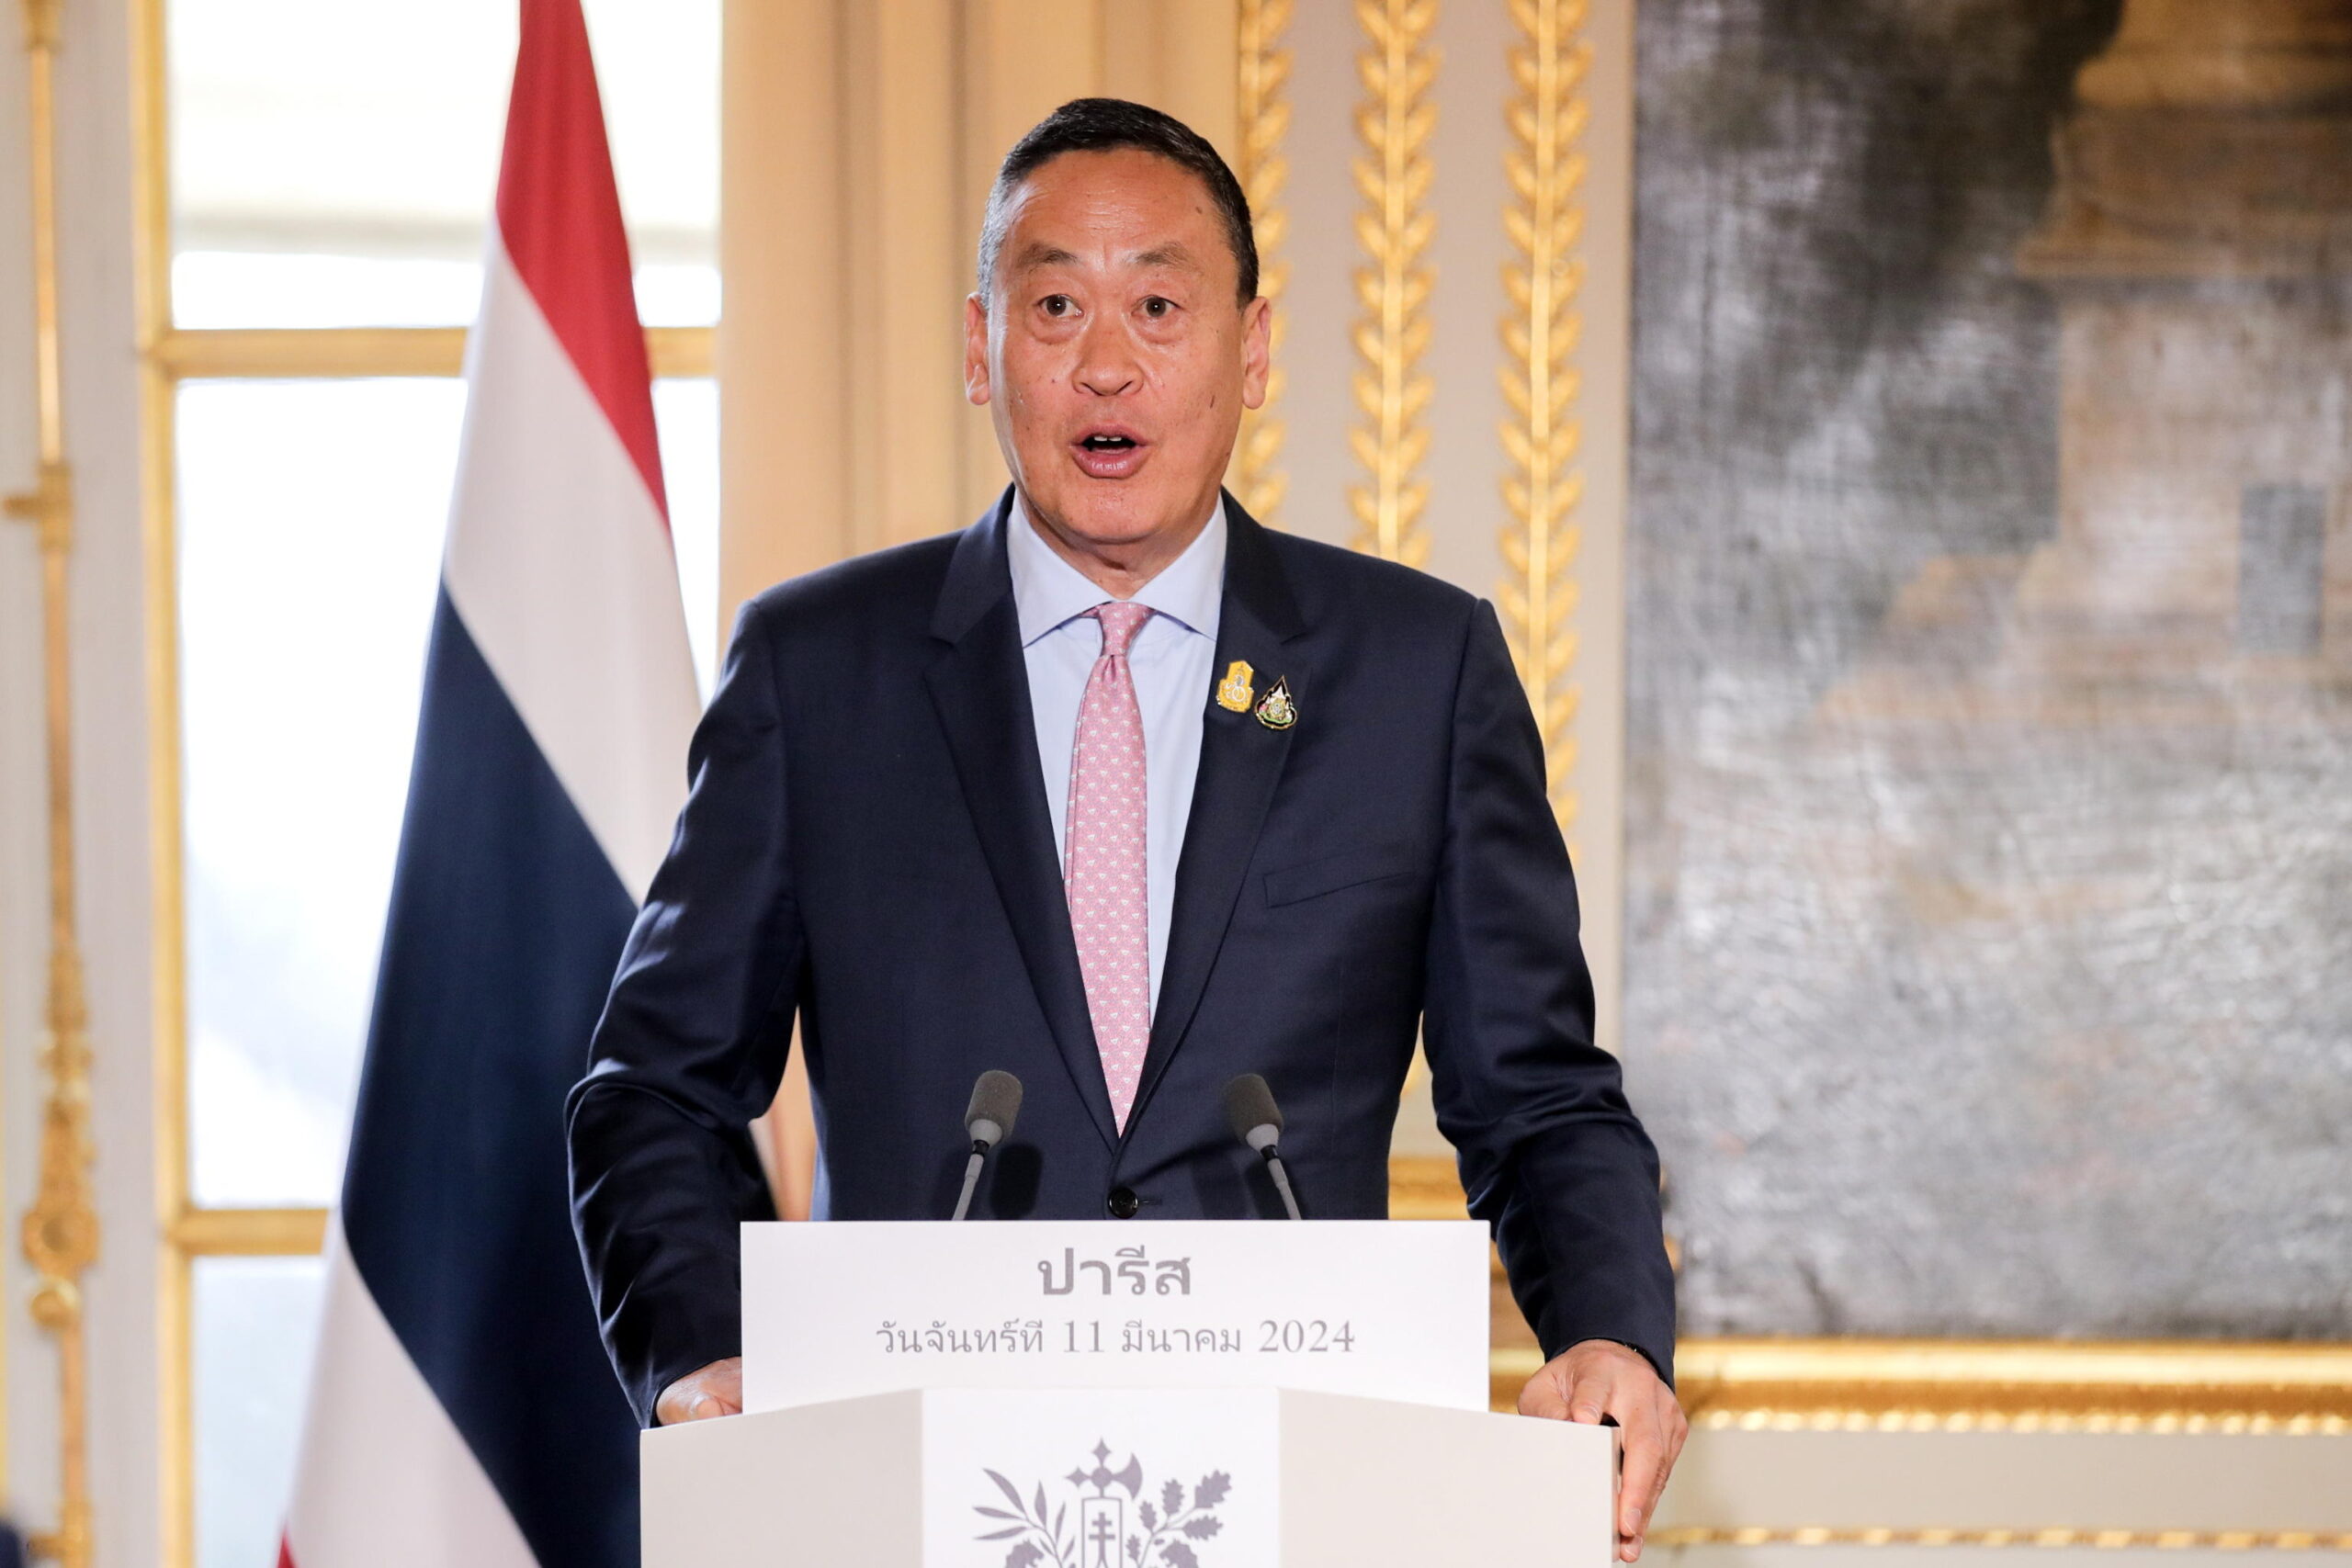 Thailandia in crisi, primo ministro: “C’è bisogno di una spinta”. Finanziamento per piano aiuti da 13,7 mld di dollari